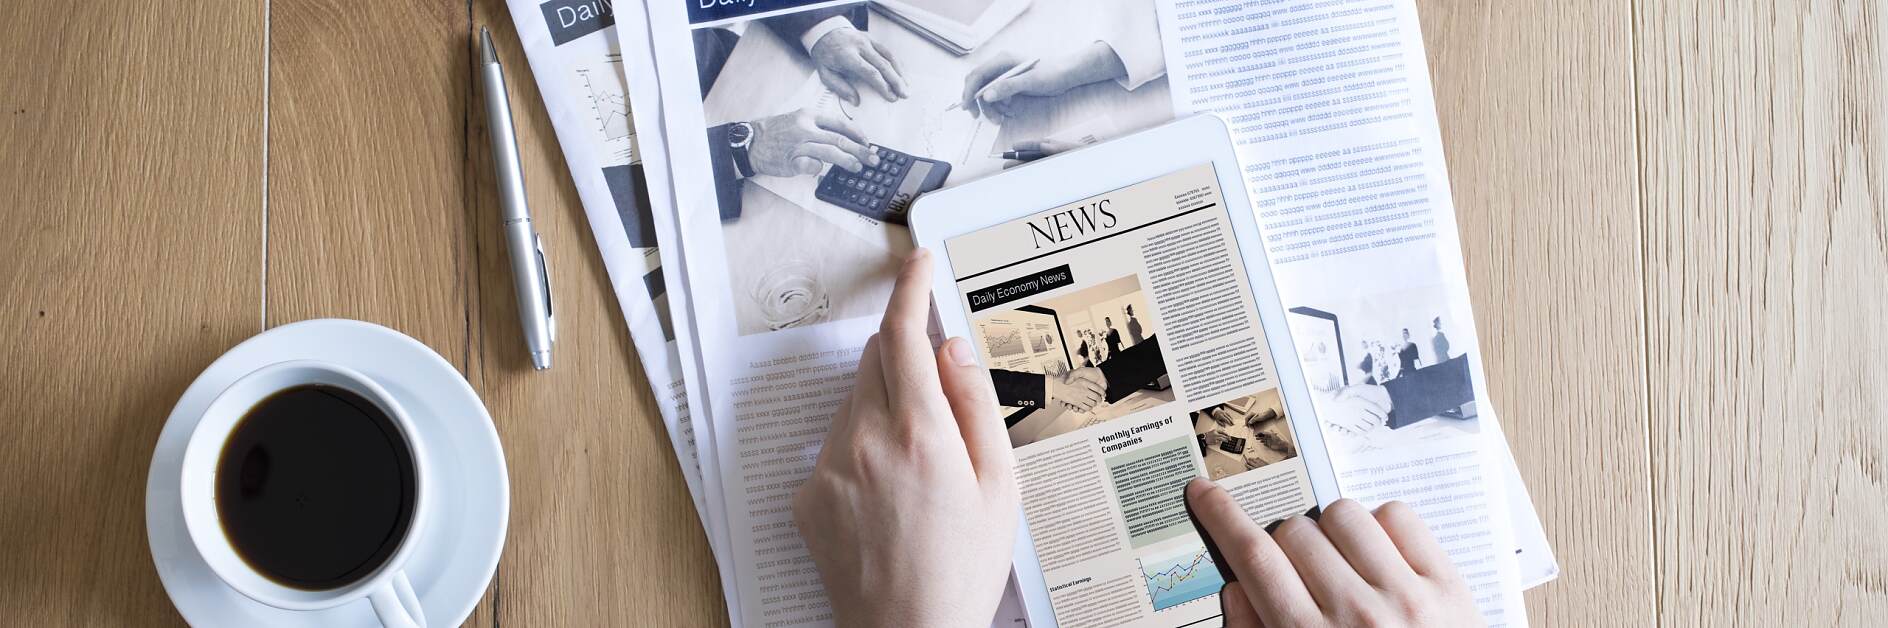 报纸和 iPad 的组合：纸张和印刷